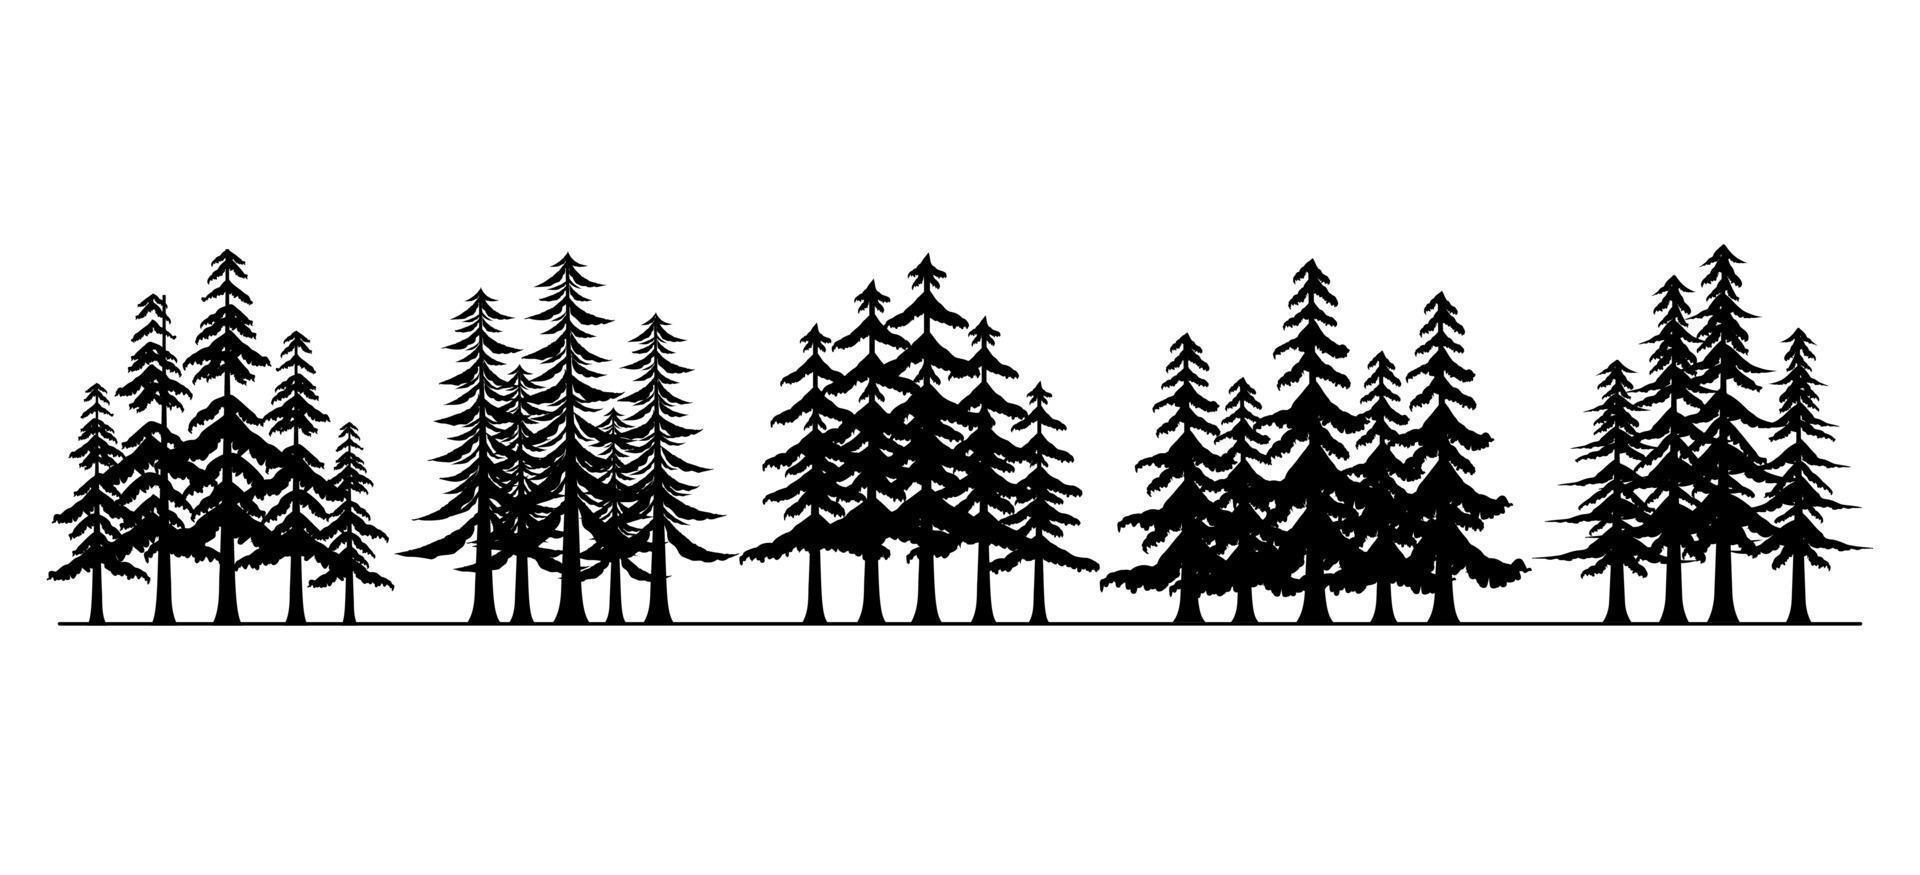 groupe de pins, collection de silhouettes d'arbres forestiers vecteur